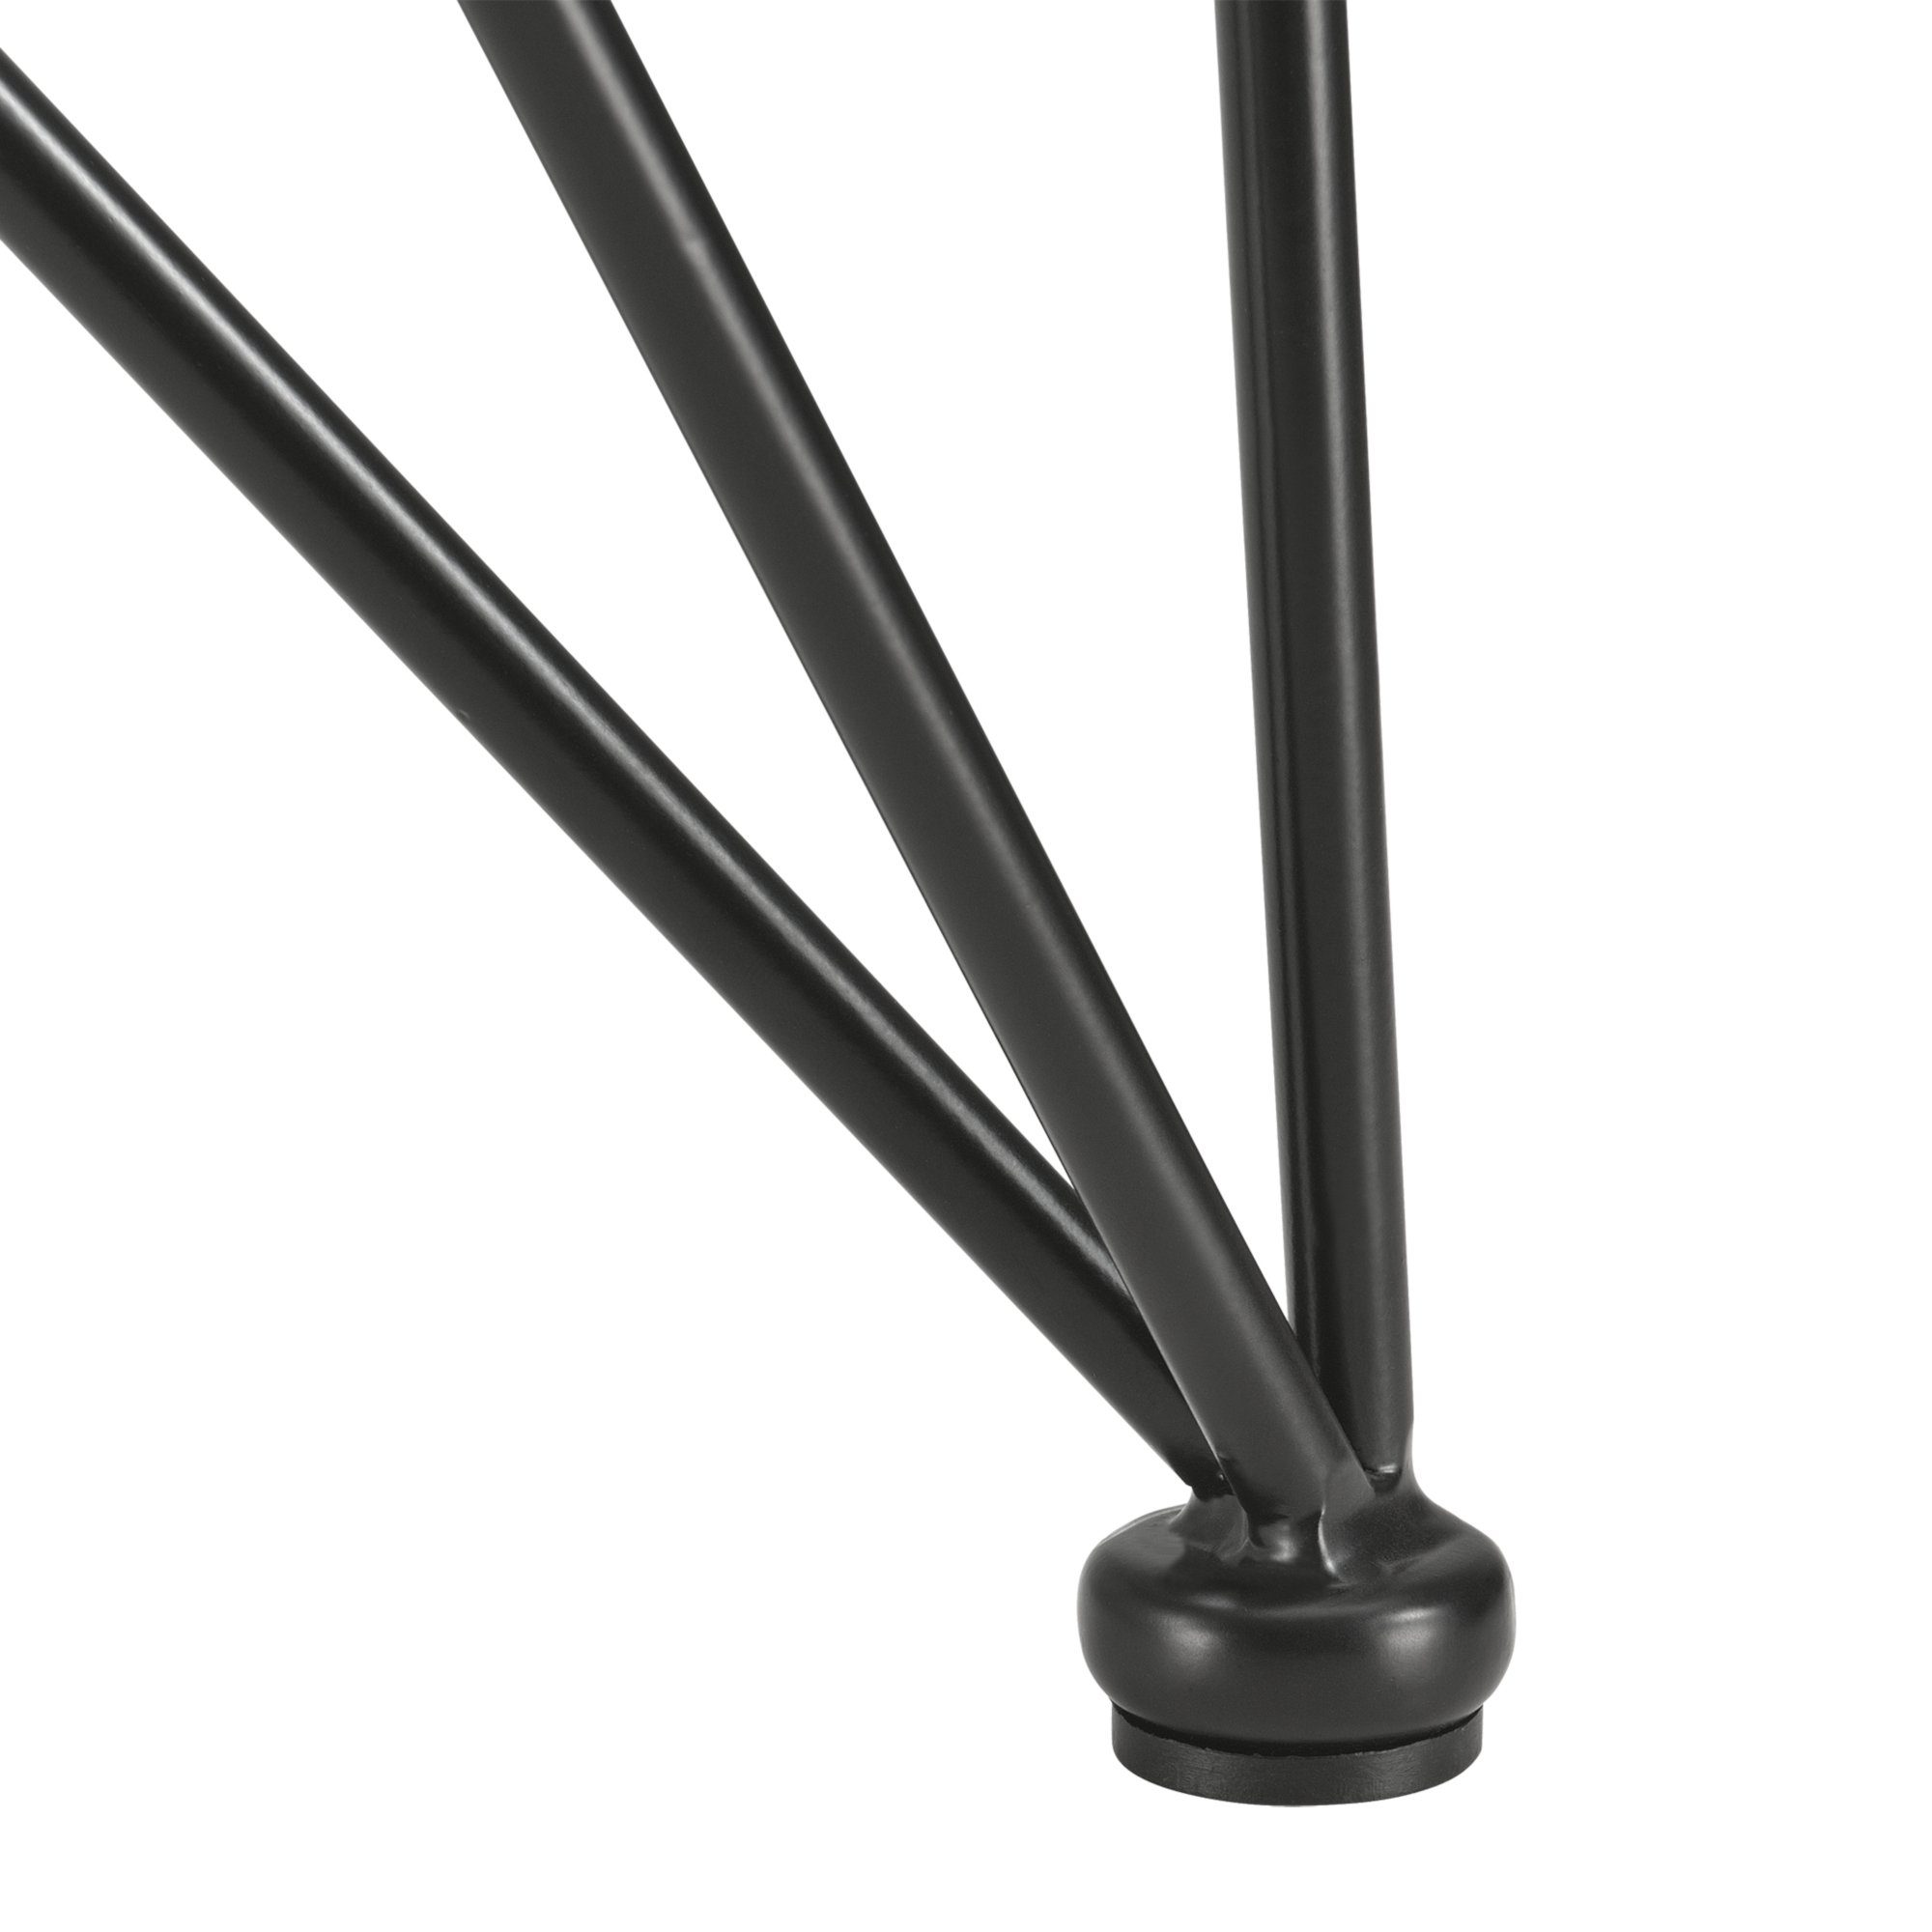 62x22x72cm für Stahl, schwarz en.casa Untergestell, Tischgestell Esstisch